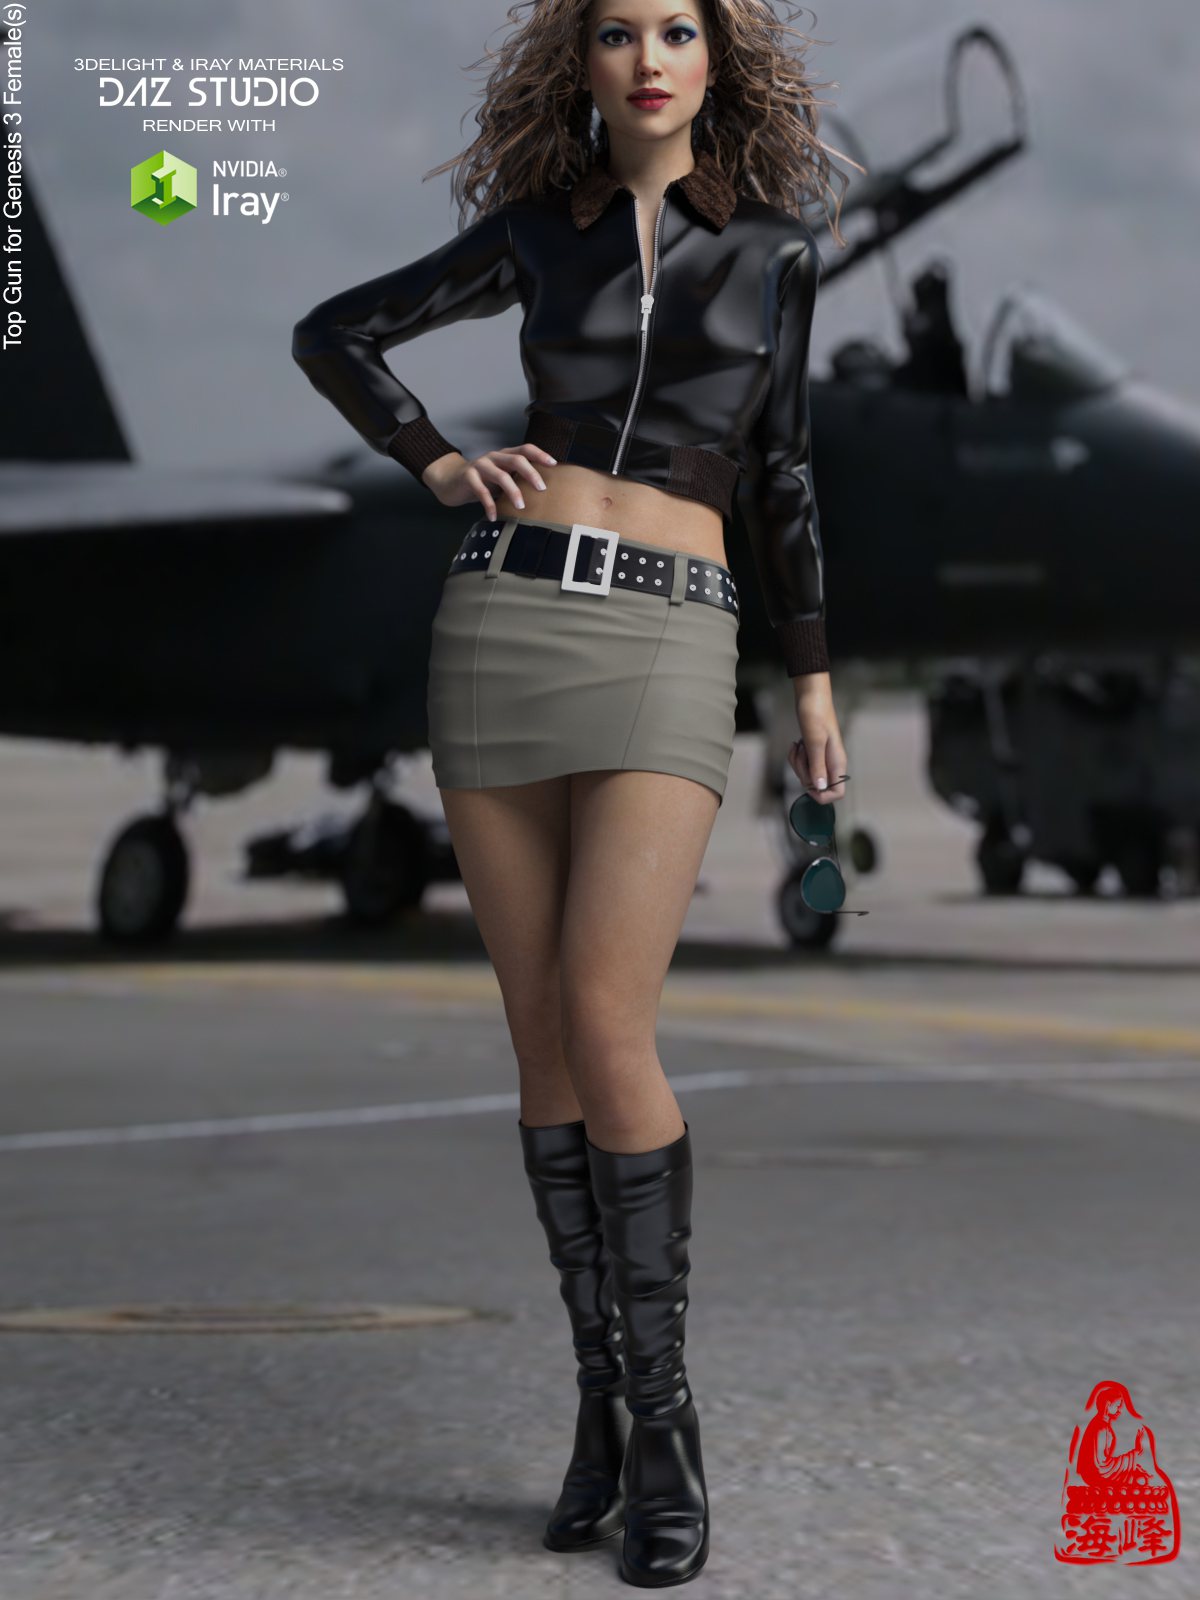 Top Gun for Genesis 3 Females_DAZ3D下载站